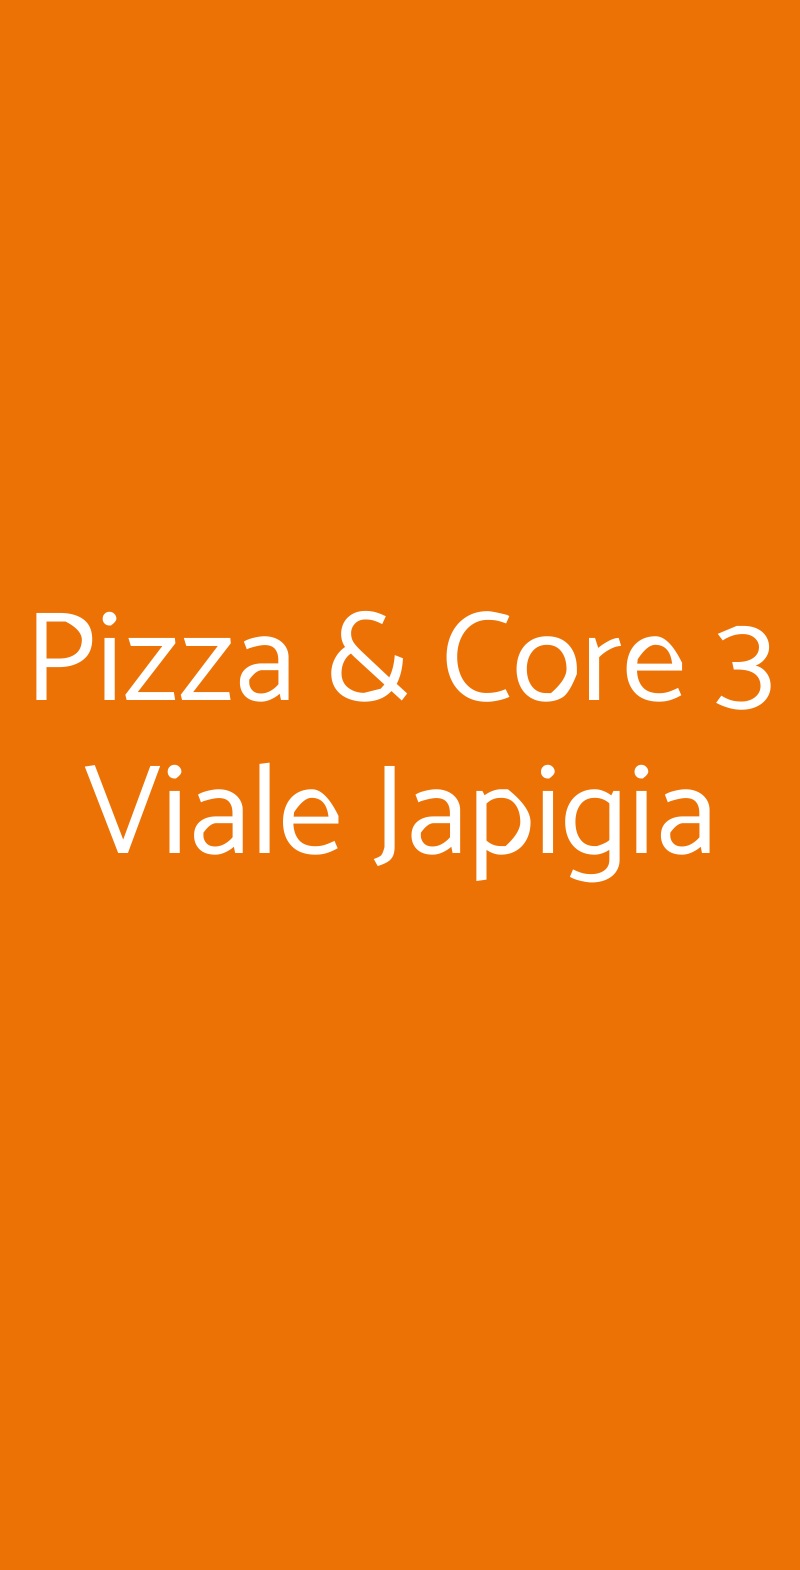 Pizza & Core 3 Viale Japigia Lecce menù 1 pagina